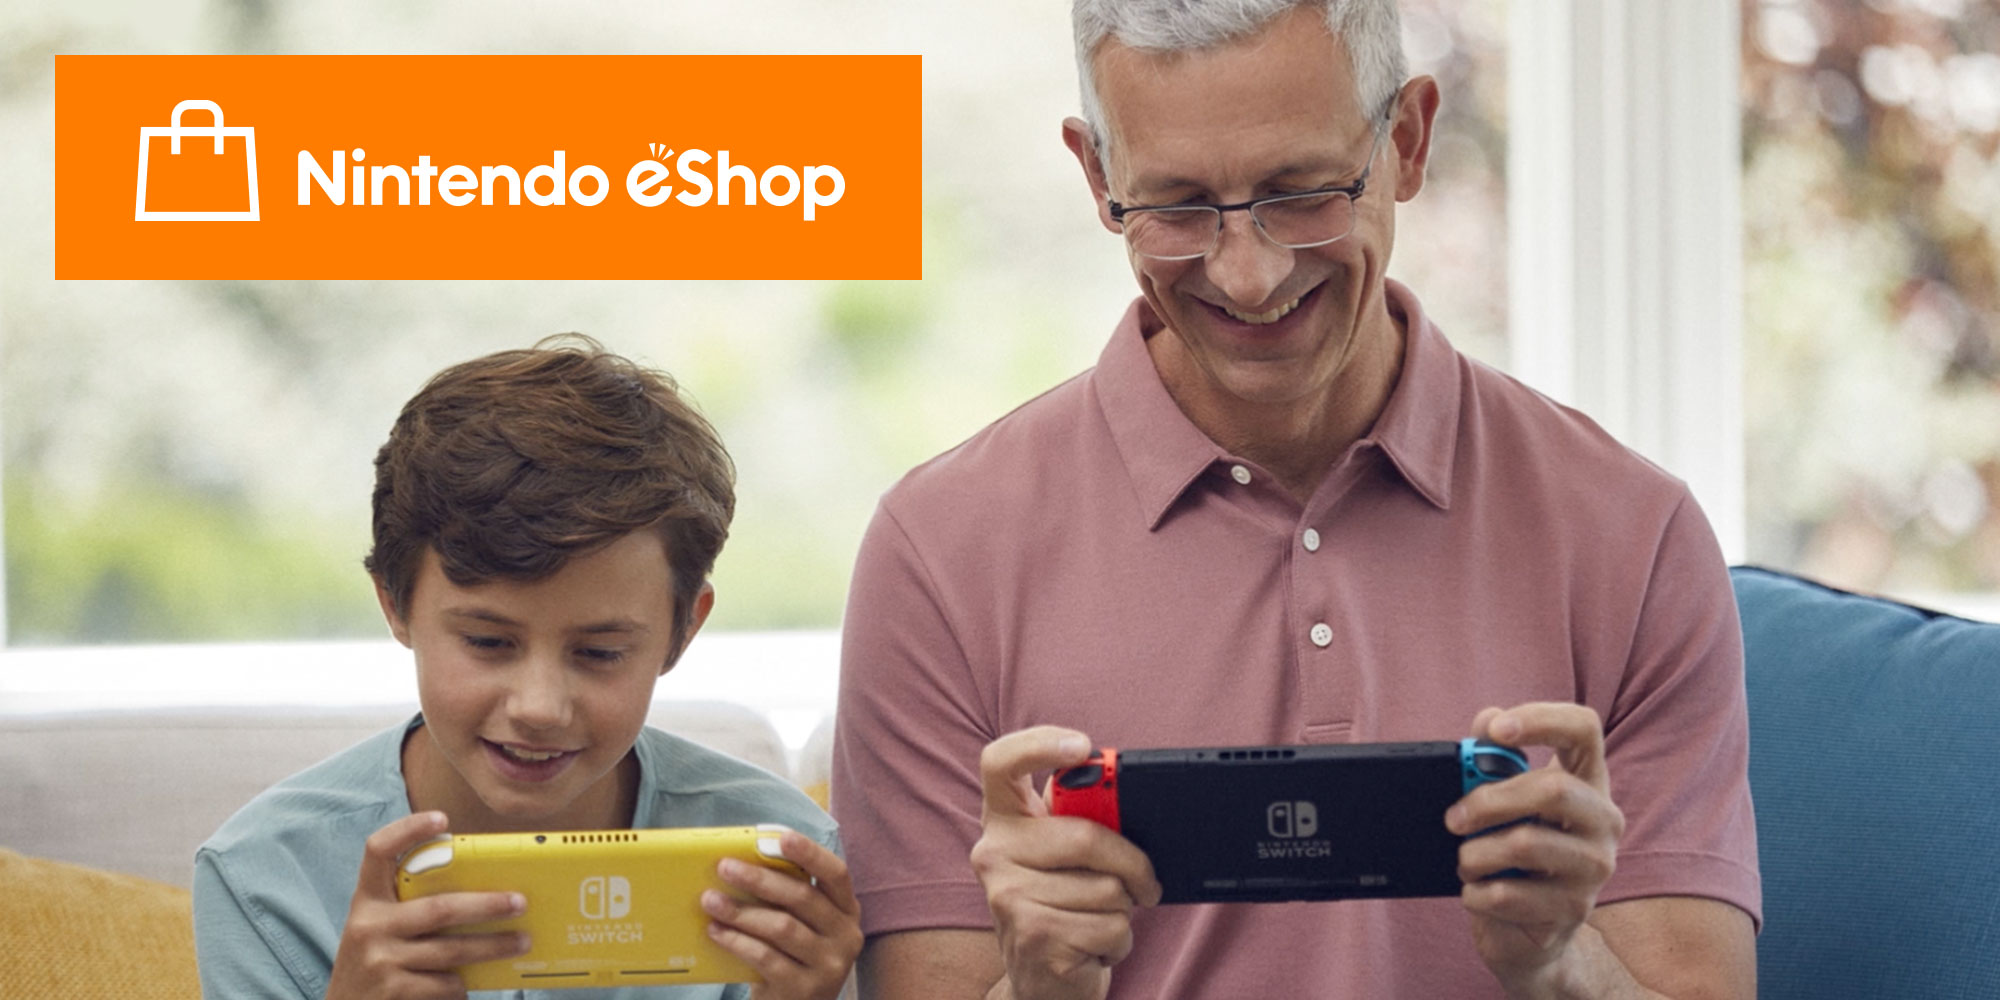 Ga voor digitaal met de Nintendo eShop op de Nintendo Switch!